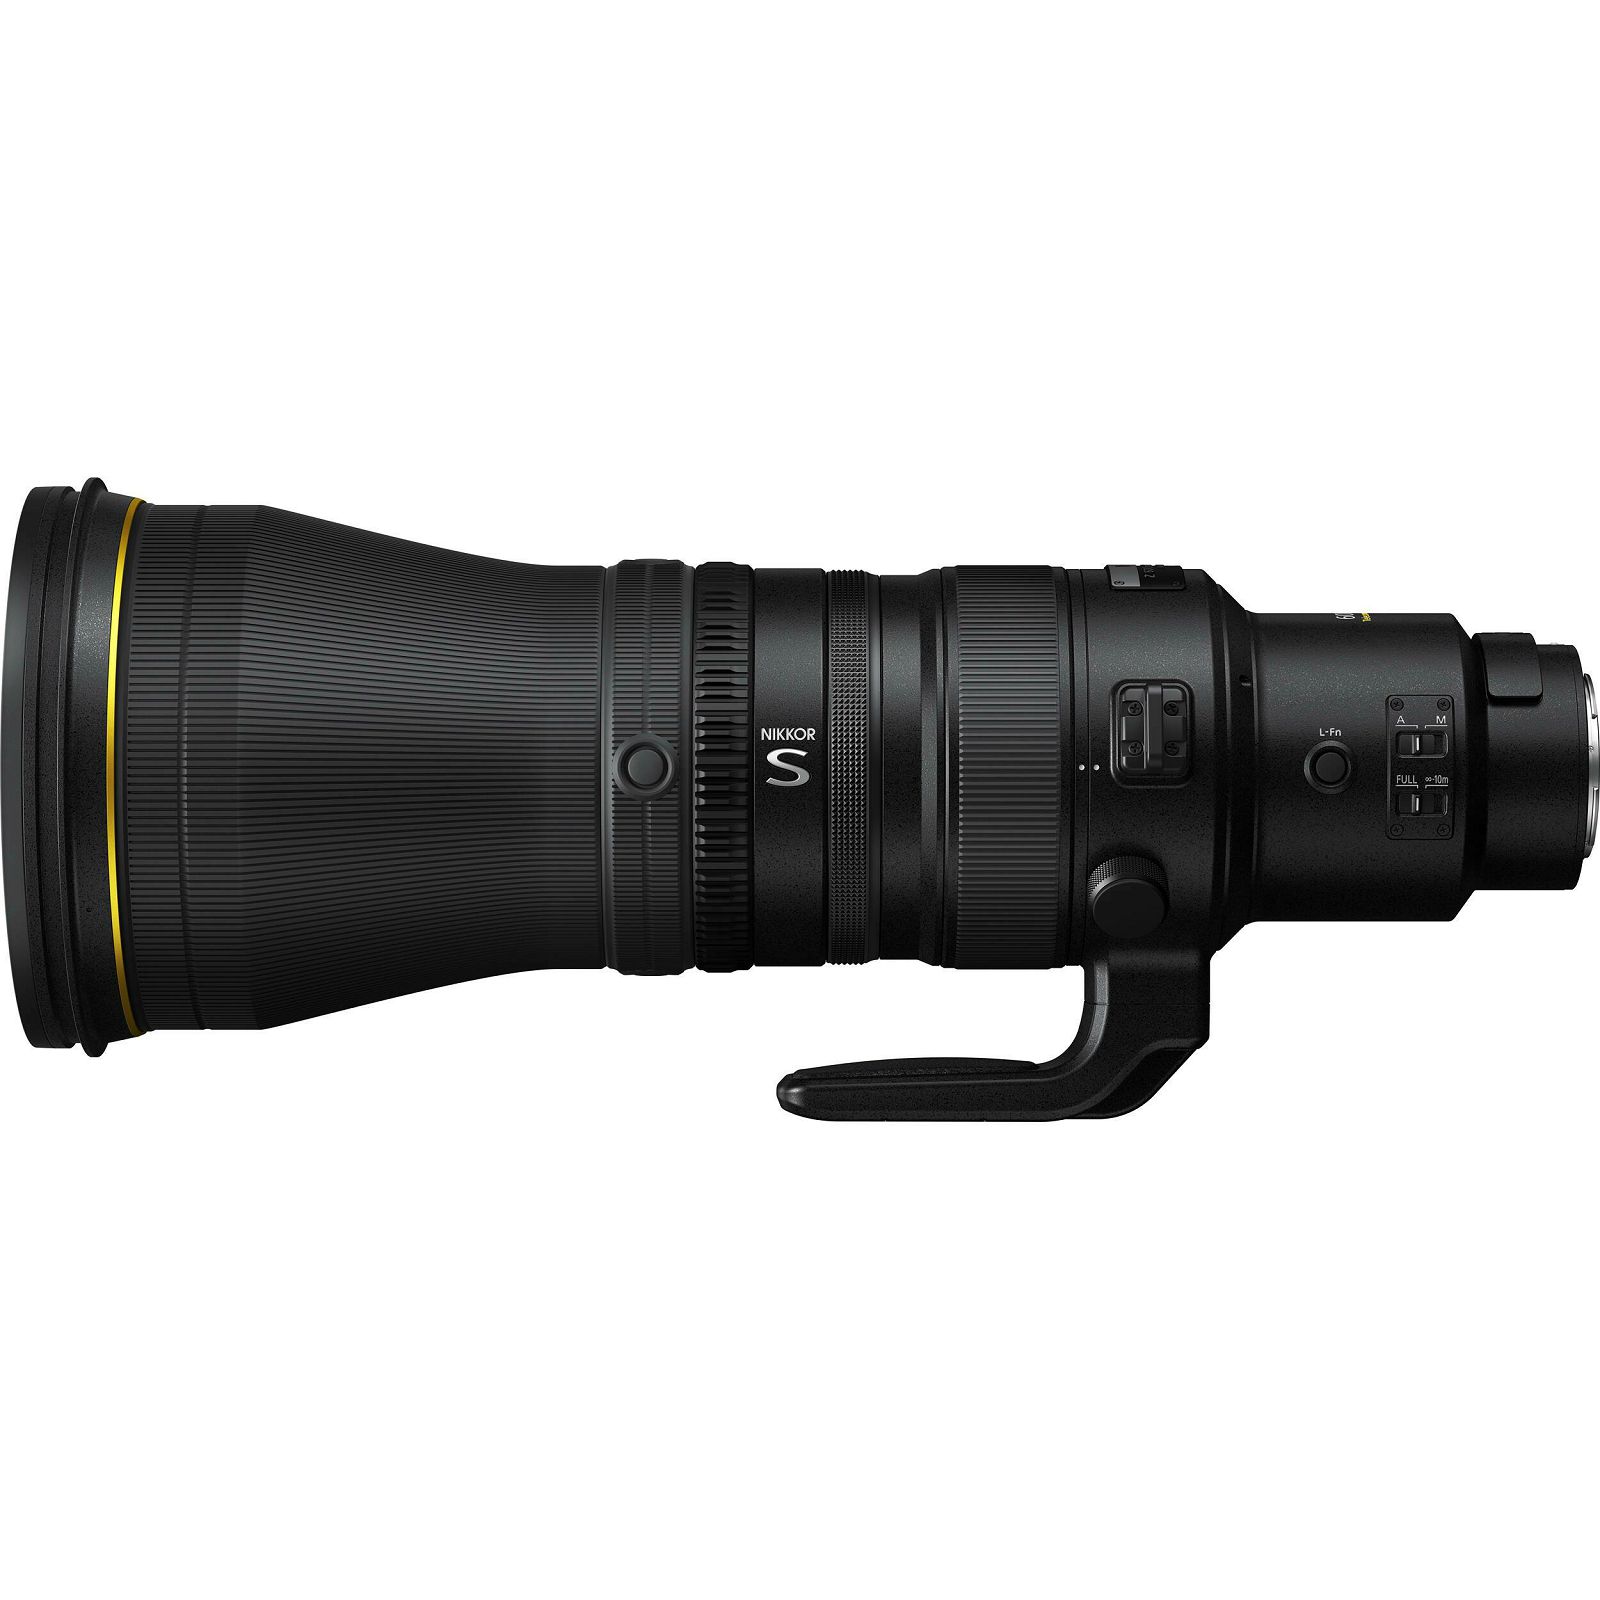 Nikon Z 600mm f/4 TC VR S telefoto objektiv (JMA504DA)